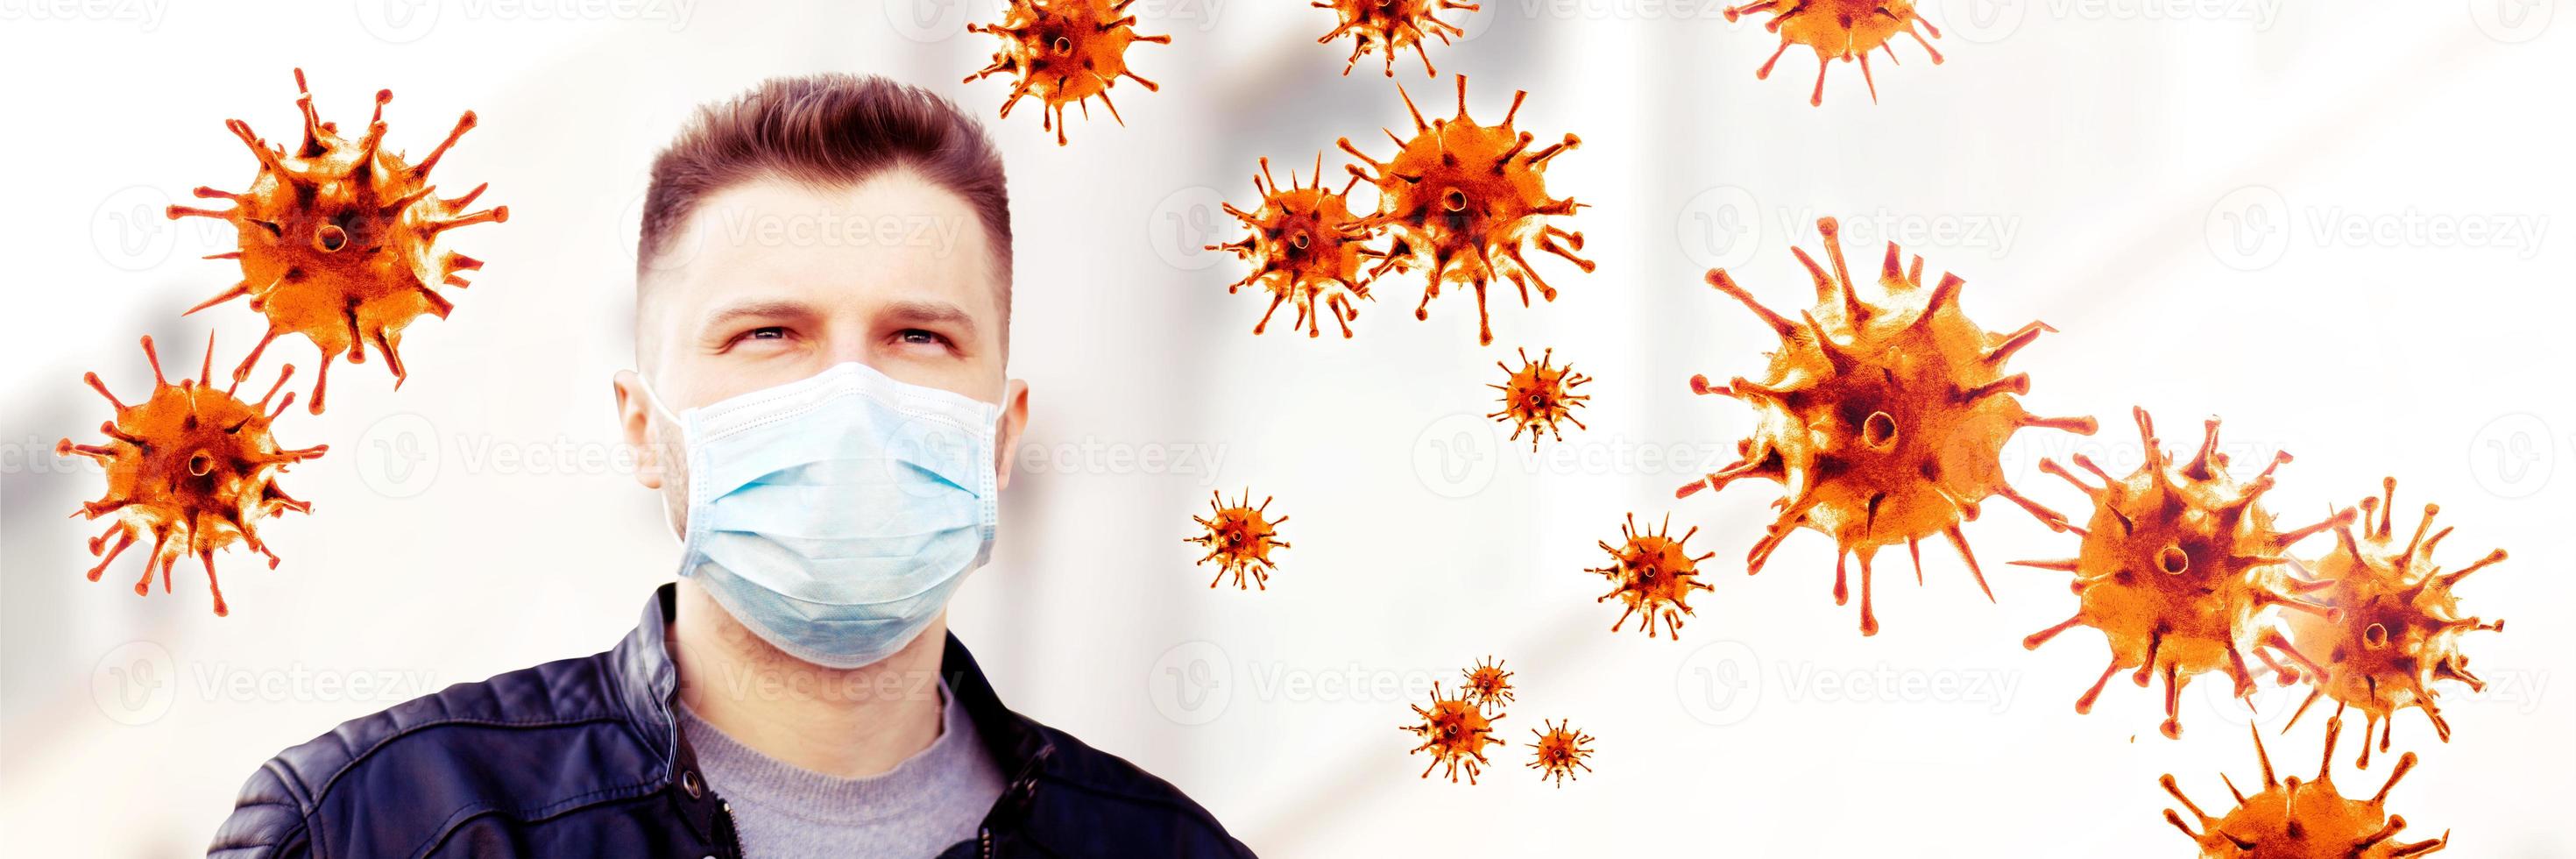 giovane in maschera facciale sterile contro il virus corona. foto